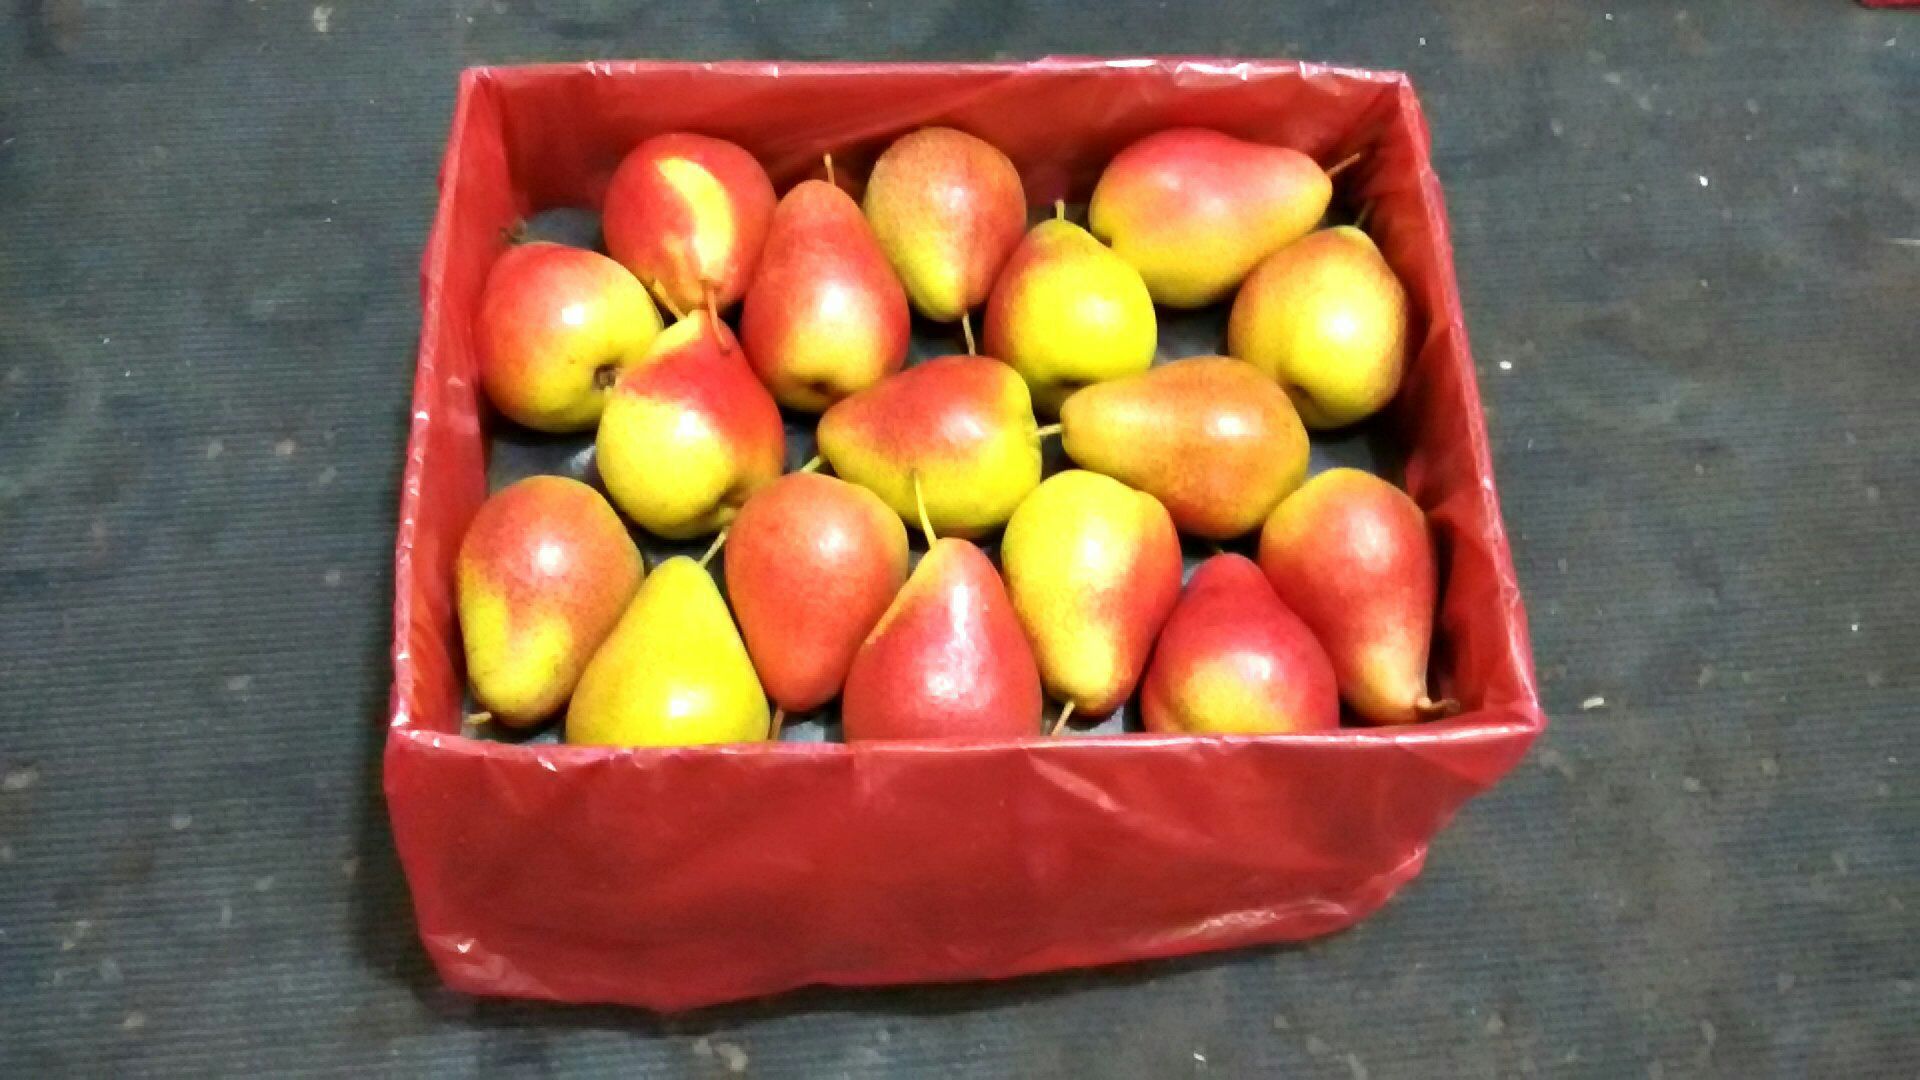 自然成熟红梨 红啤梨 葫芦梨新鲜水果 国外进口品种红梨